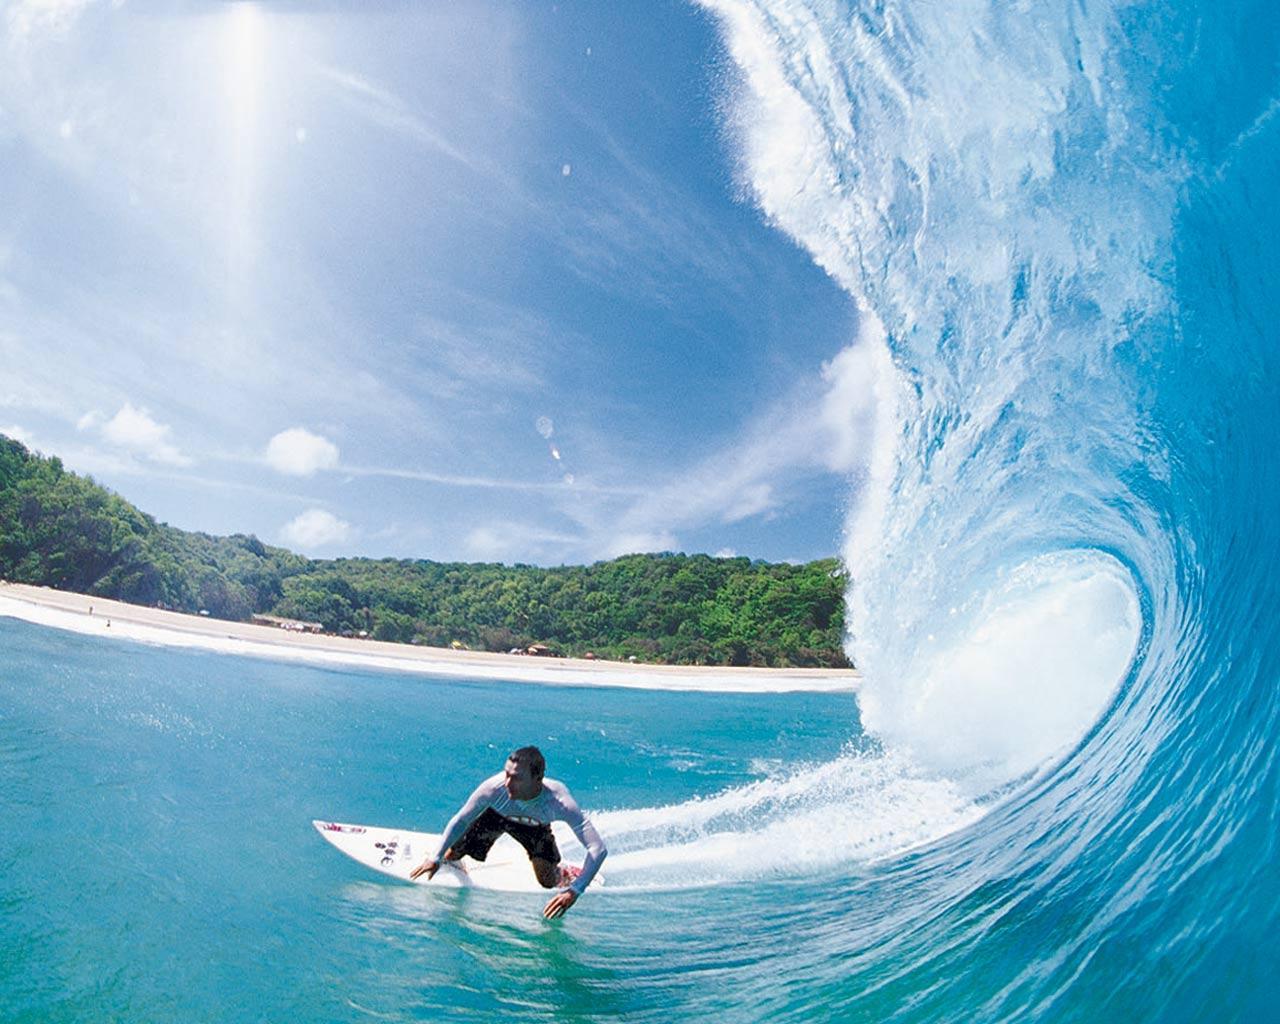 Sport: Dreamland Surfer, surfing wallpaper australia, surfing